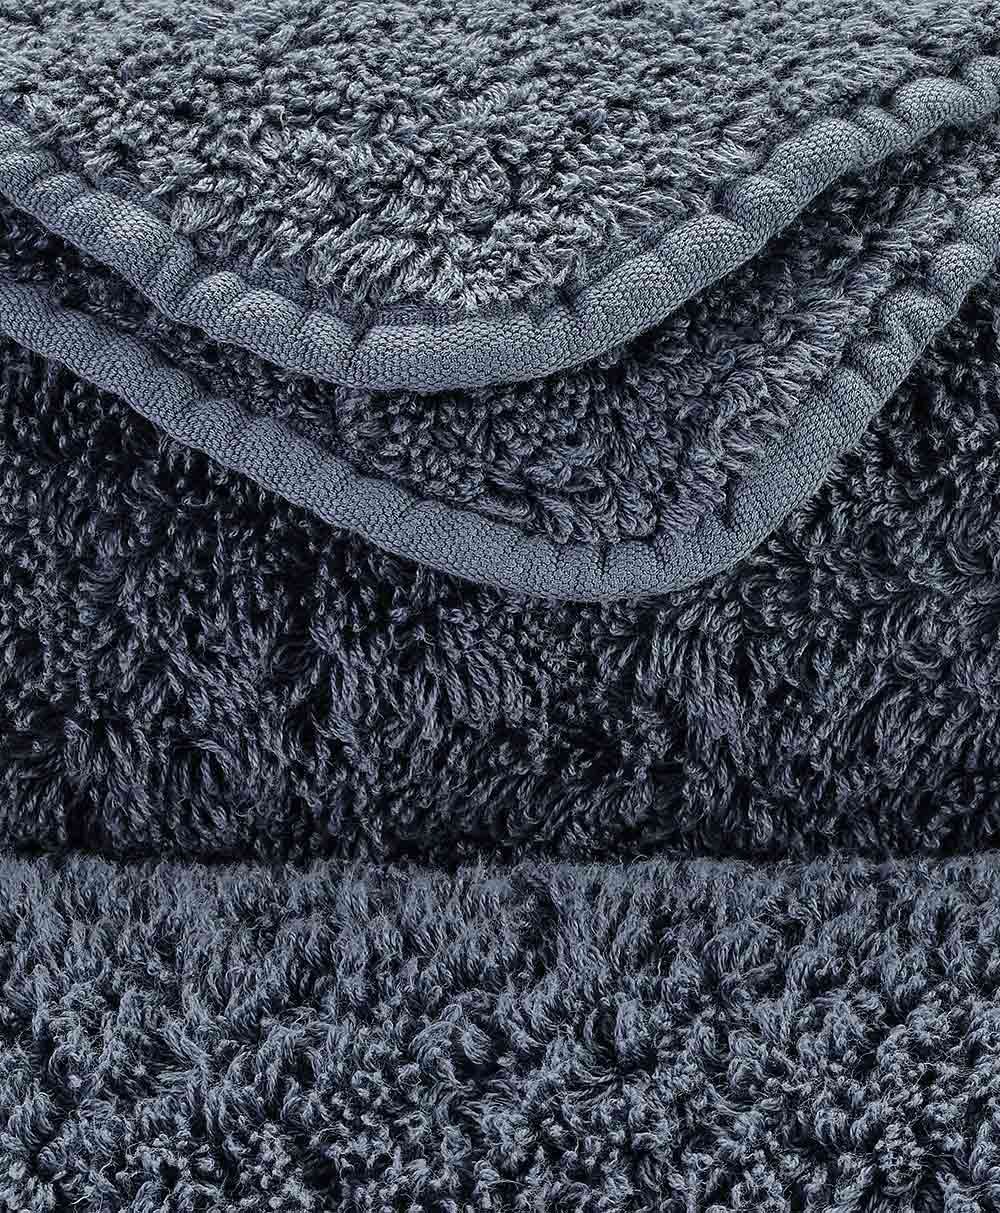 Detailbild des Handtuch Super Pile aus ägyptischer Baumwolle der Marke Abyss & Habidecor im RAUM concept store